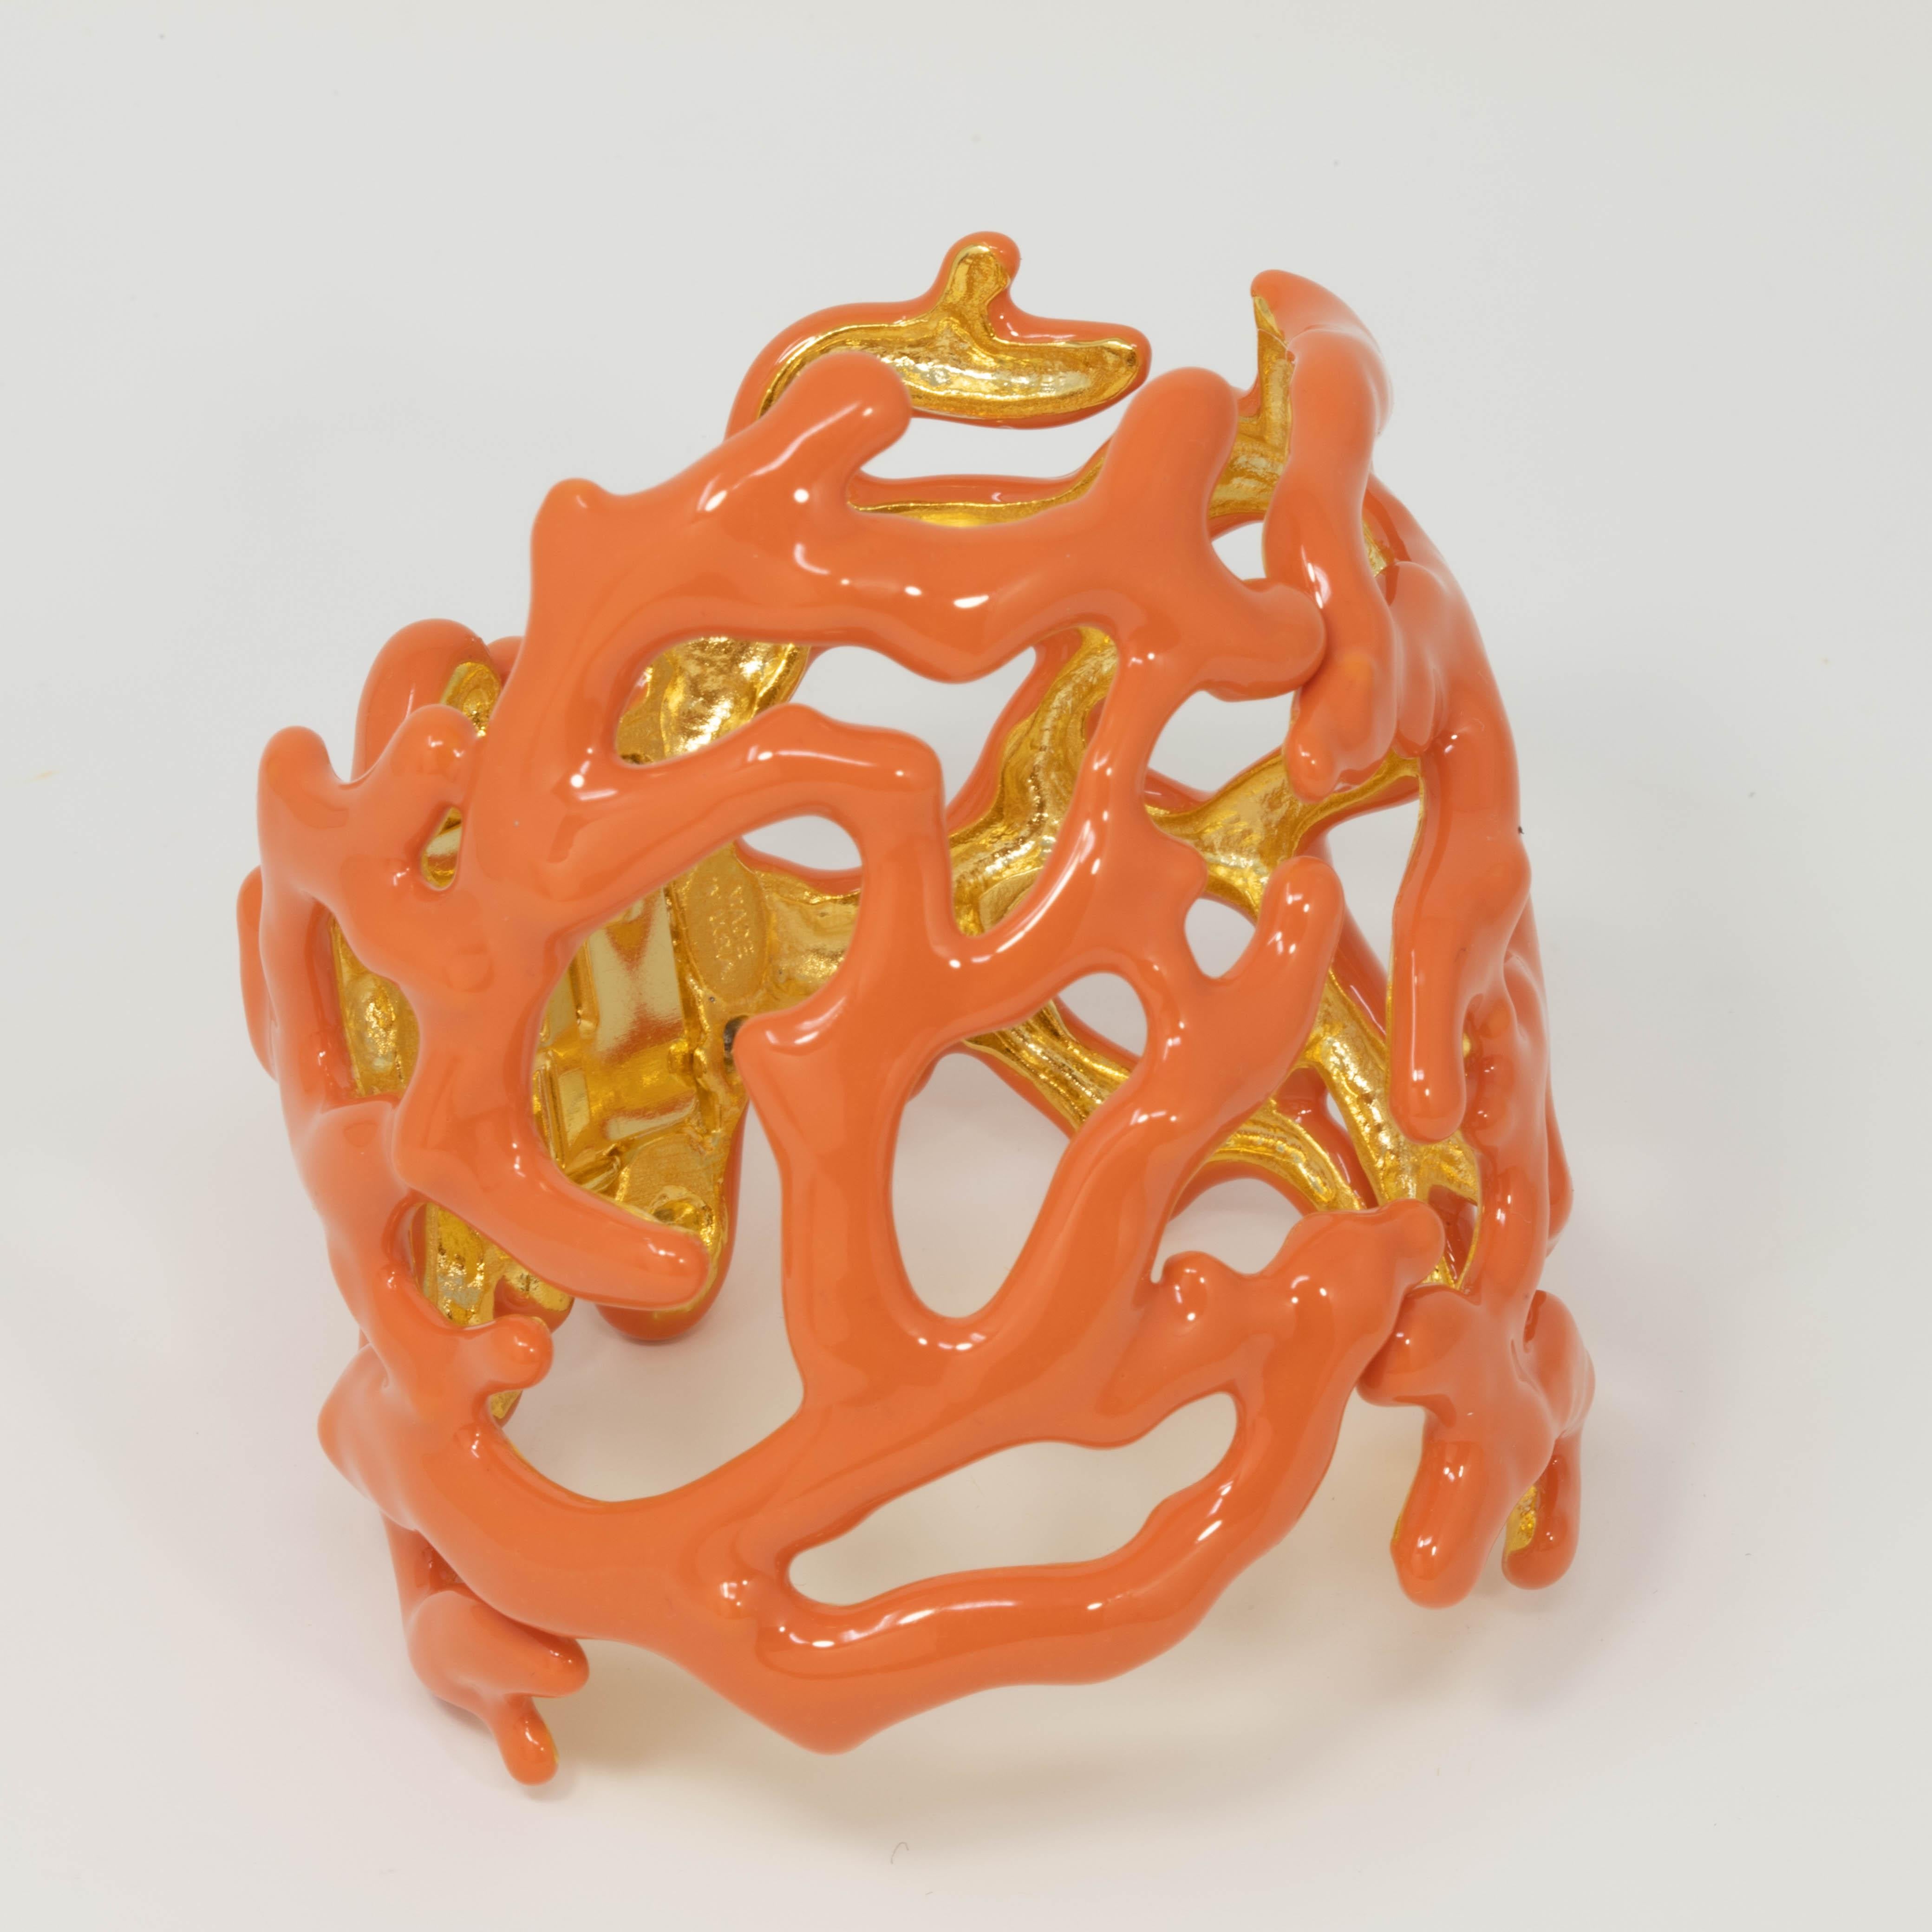 Schöner als die Weltmeere! Dieses maritime Armband von Kenneth Jay Lane's zeichnet sich durch Korallenzweige aus, die mit einer zart-orangenen Emaille bemalt sind. 

Fassung aus vergoldetem Metall. Armspange mit Scharnier.

Punzierungen: Kenneth